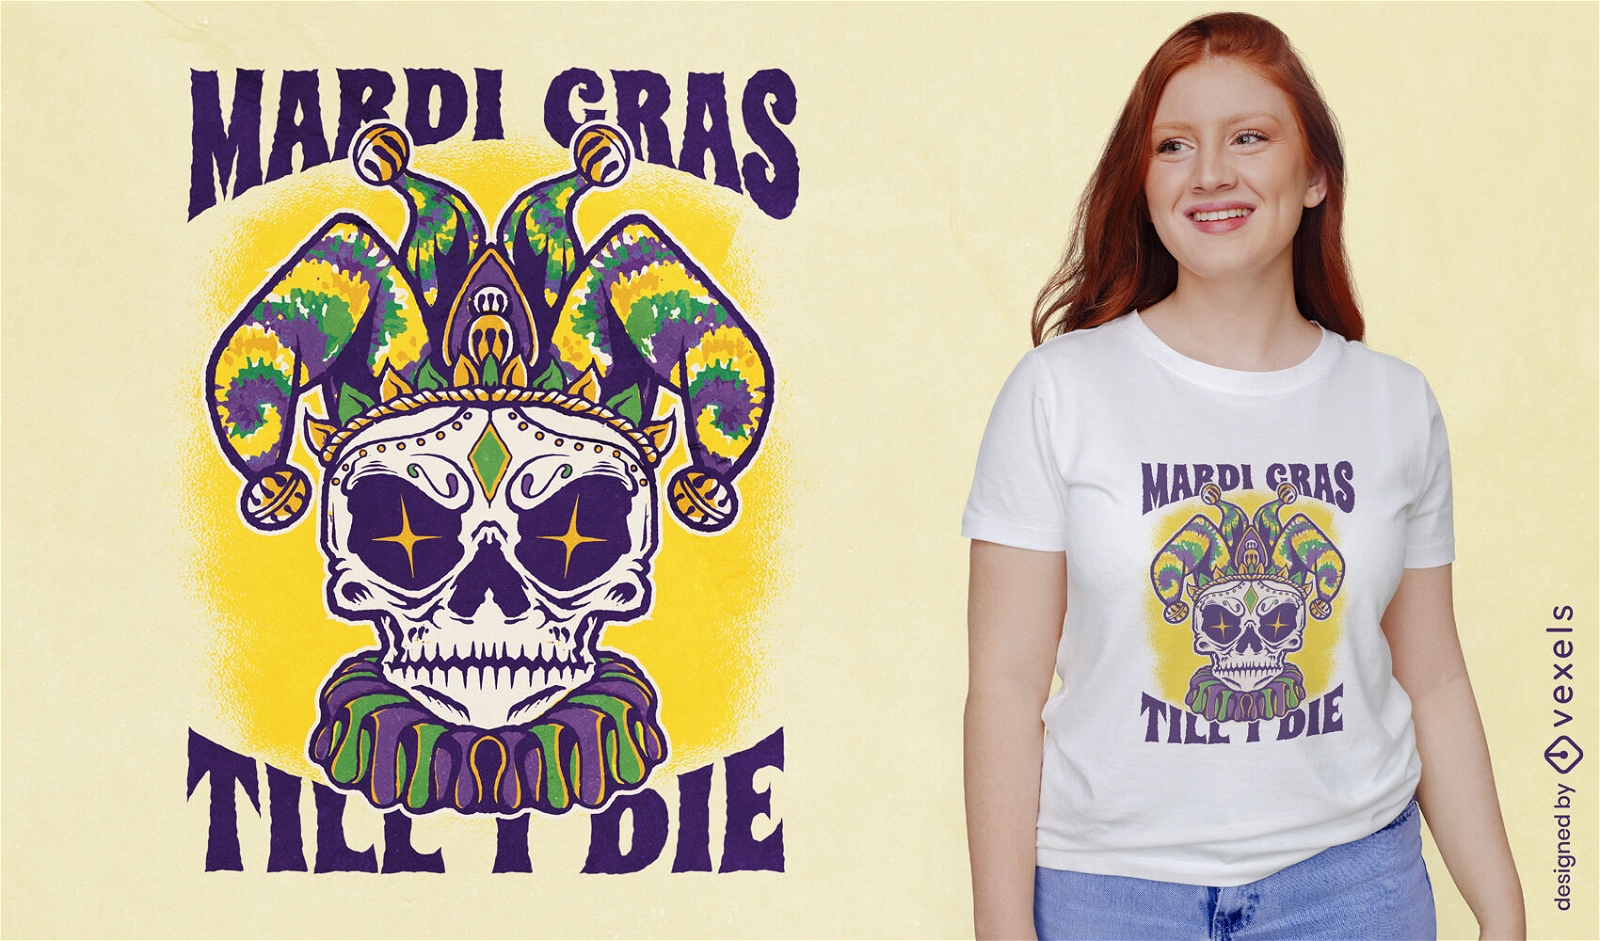 Mardi gras skull quote t-shirt design